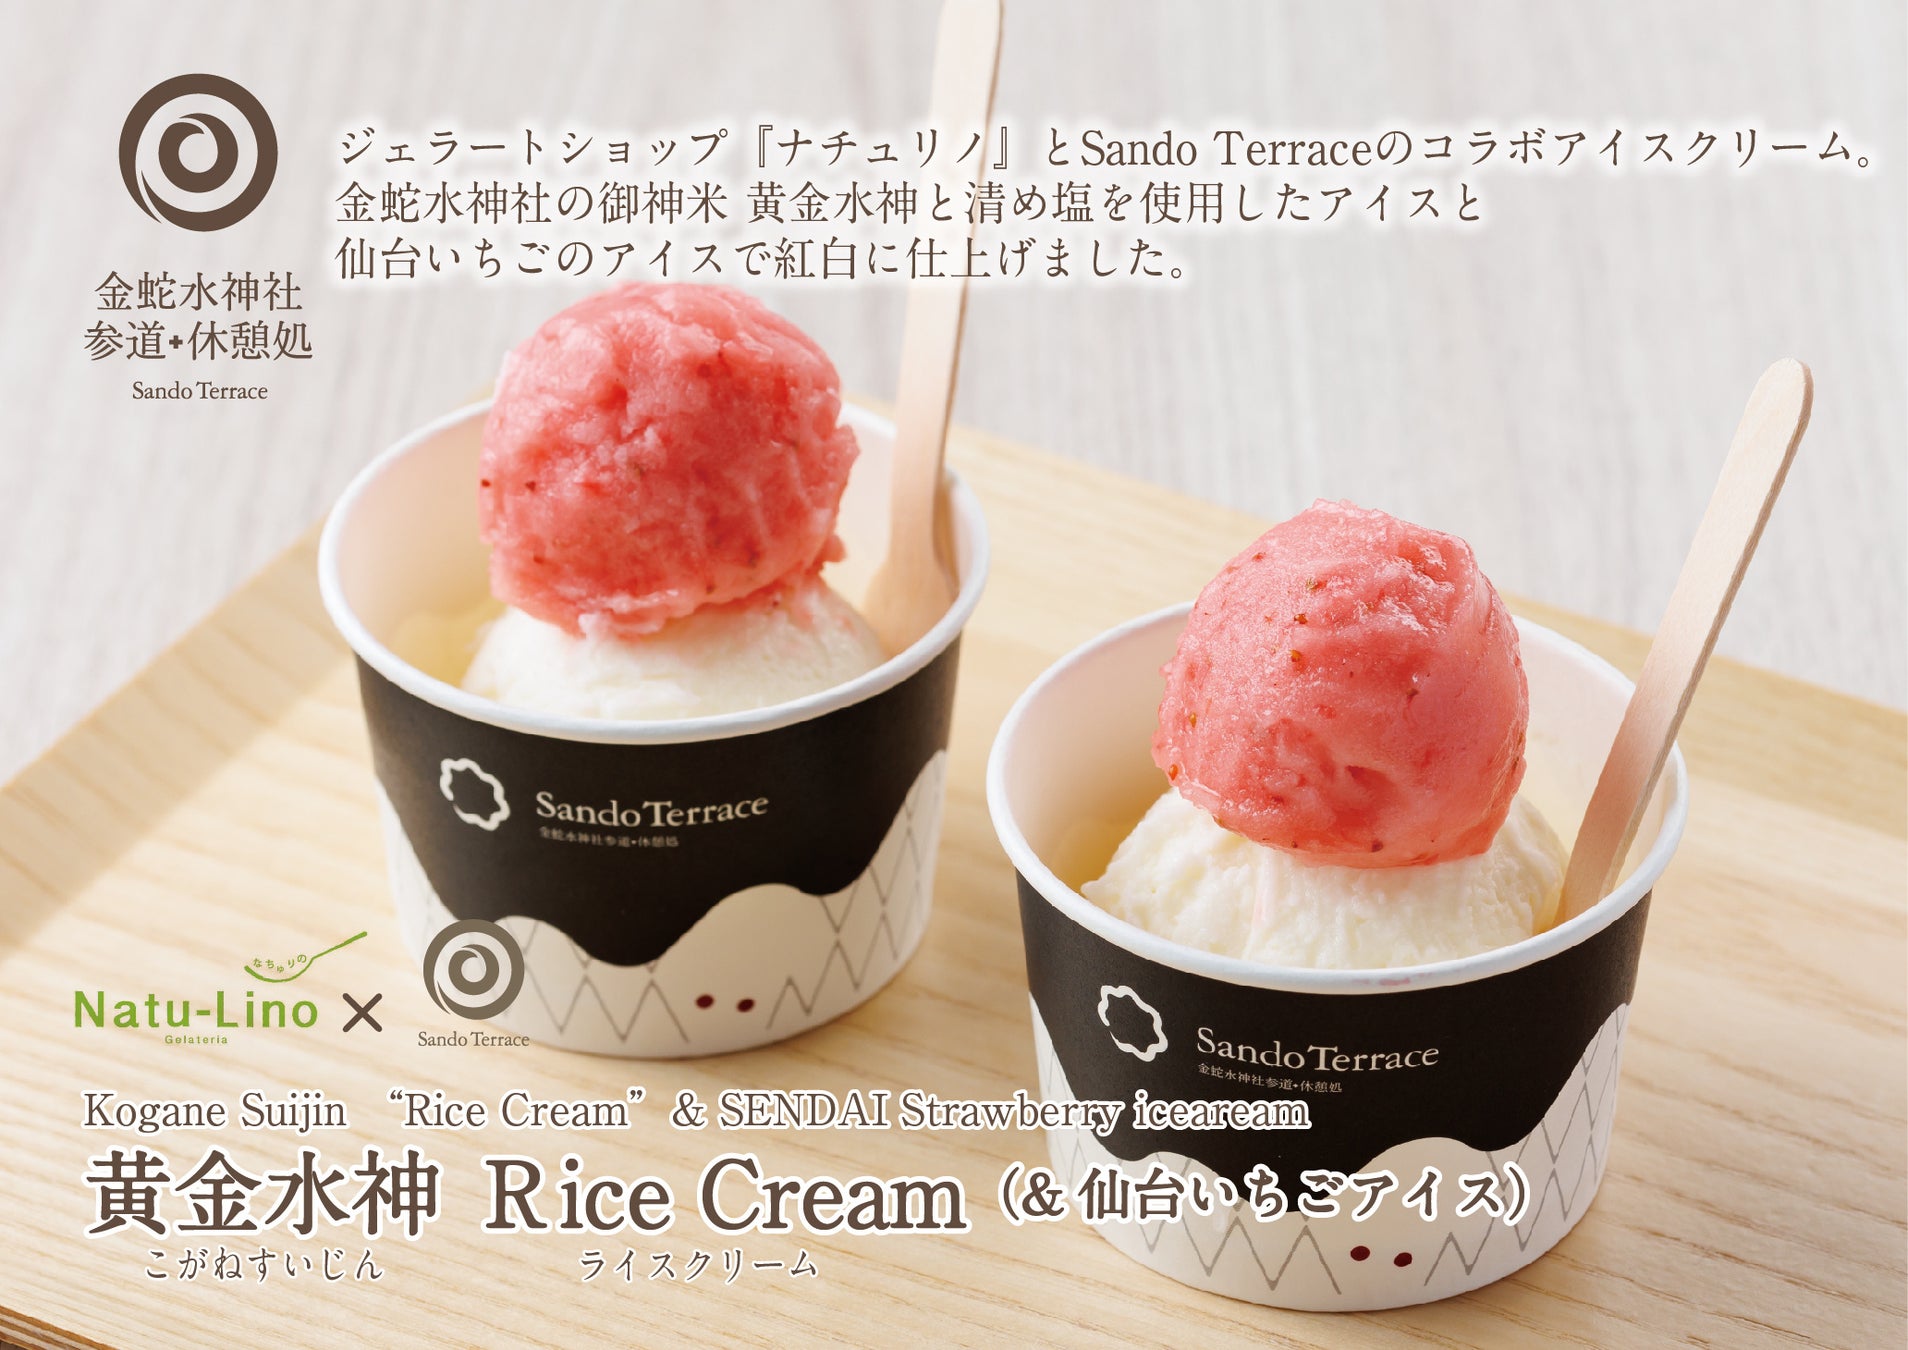 【『黄金水神 Rice Cream』発売のお知らせ 】